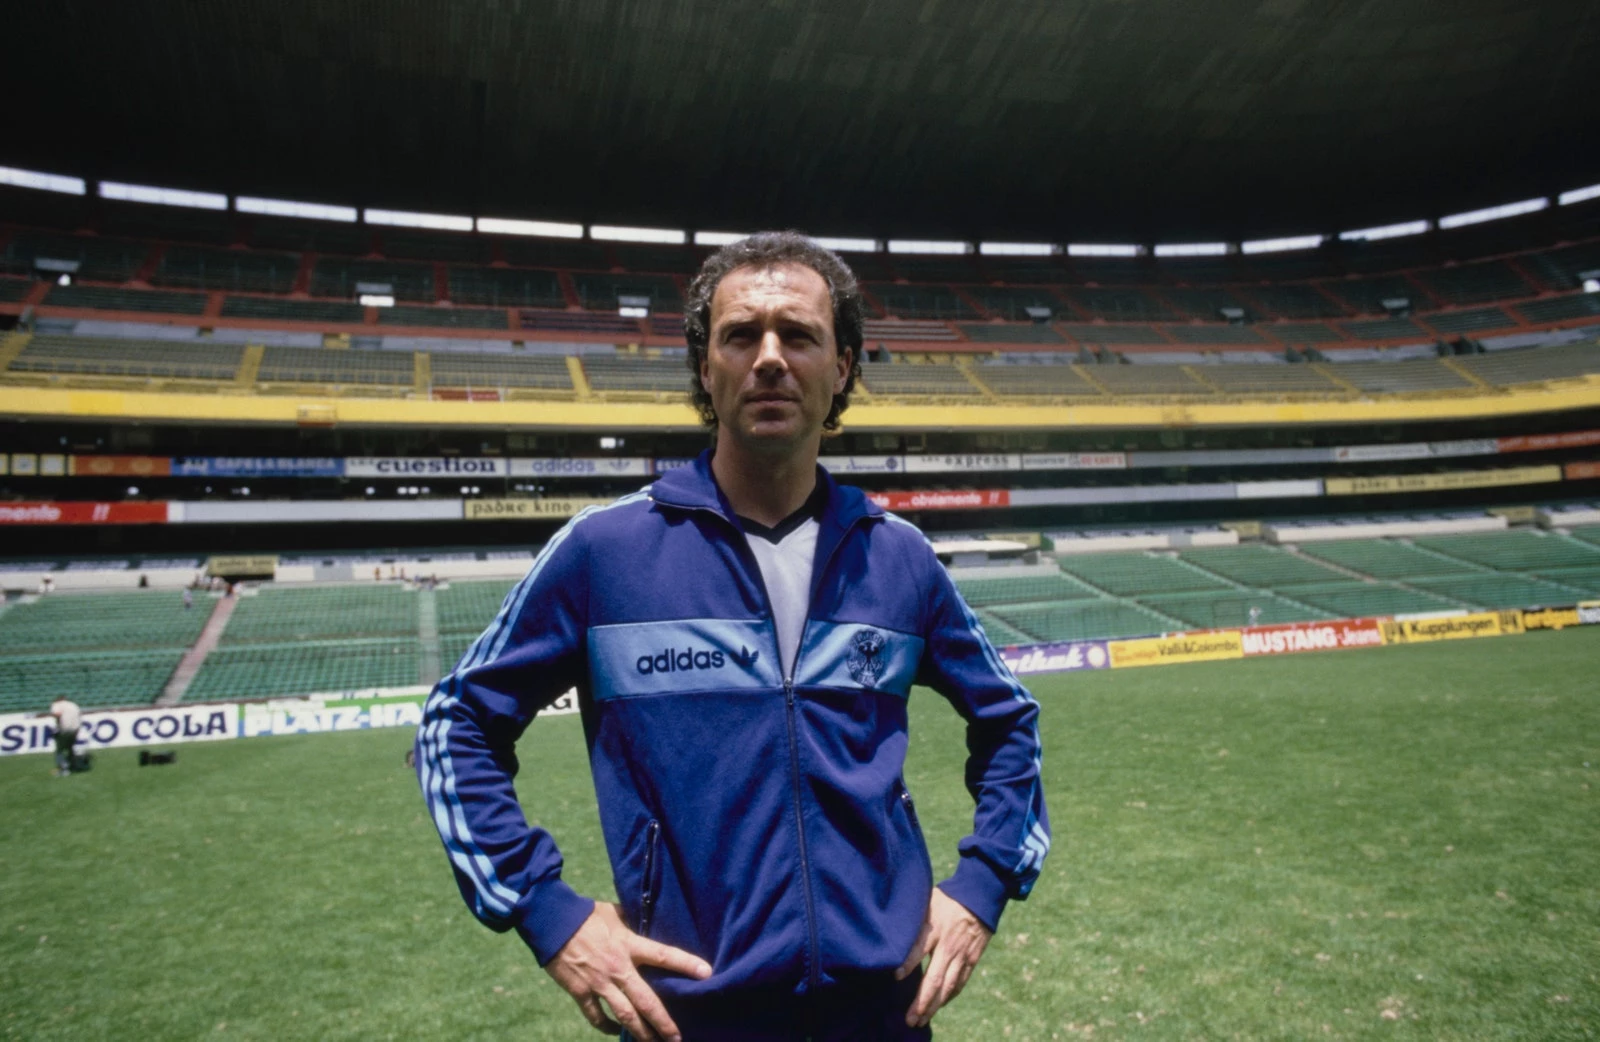 Легендарний футболіст Франц Бекенбауер, який став тренером, демонструє свій фірмовий спортивний костюм adidas на Чемпіонаті світу з футболу 1986 року